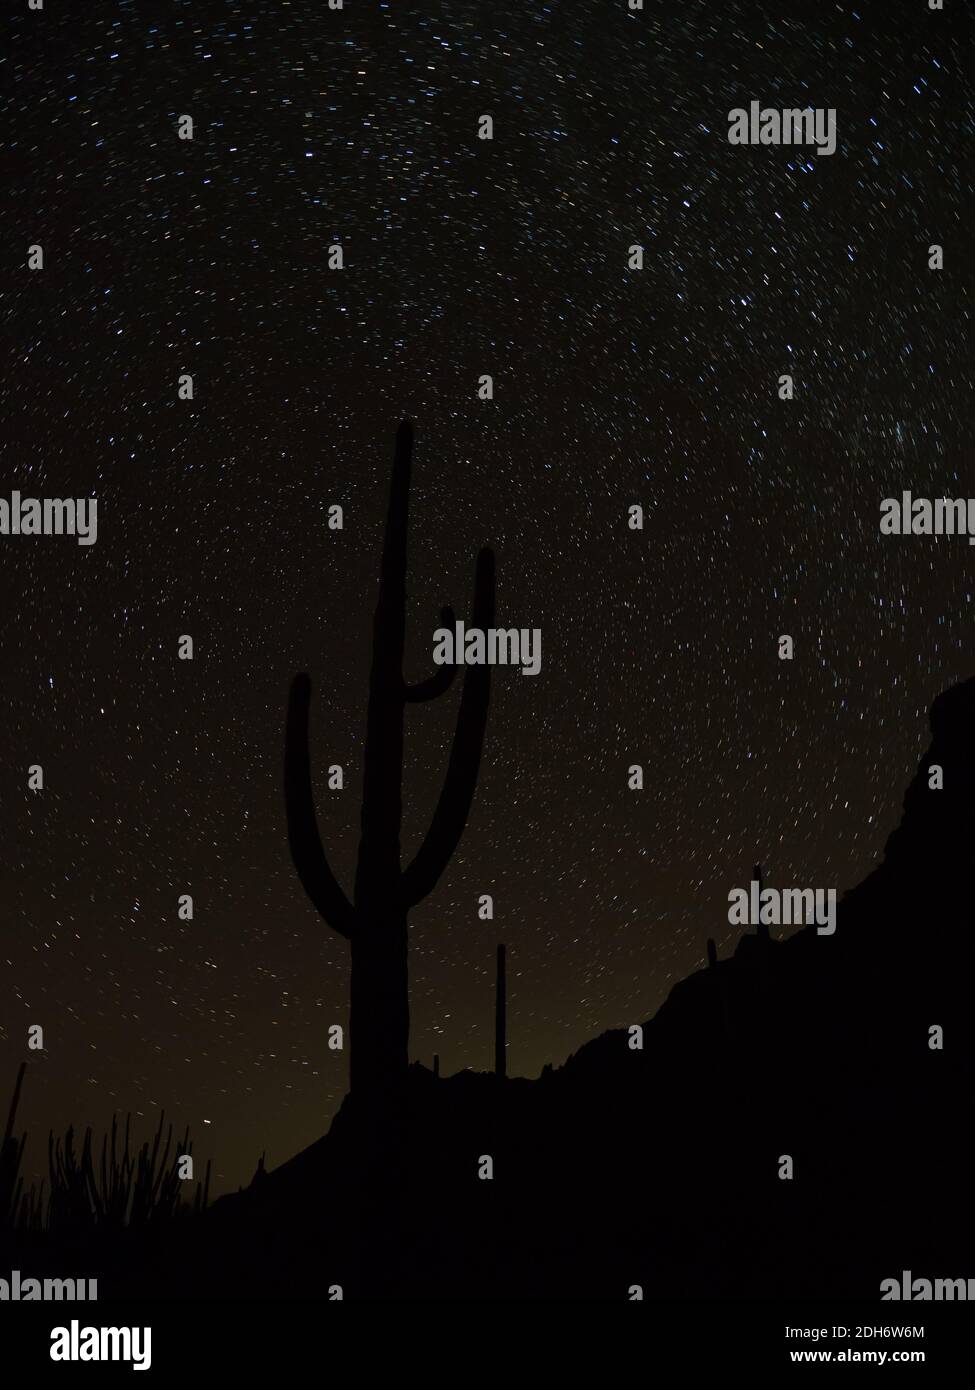 Des étoiles incroyables dans le ciel nocturne avec un cactus saguaro au monument national Organ Pipe Cactus, Arizona, États-Unis Banque D'Images